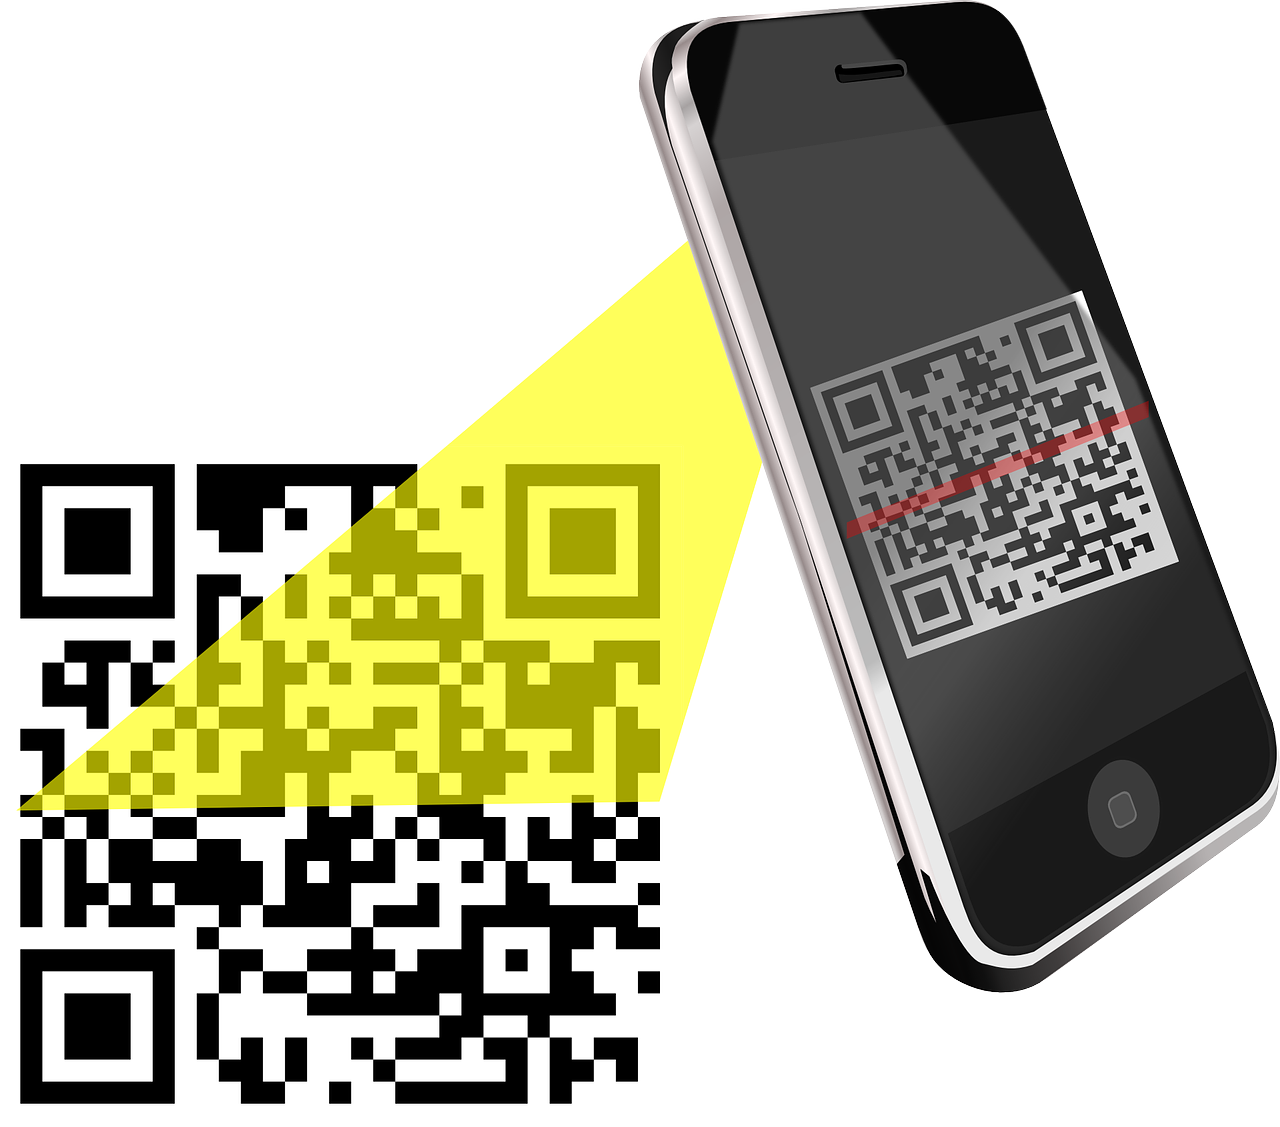 QR код. Смартфон QR код. Сканировать QR код. Иллюстрация смартфона с QR кодом. Приложение где сканируют qr код